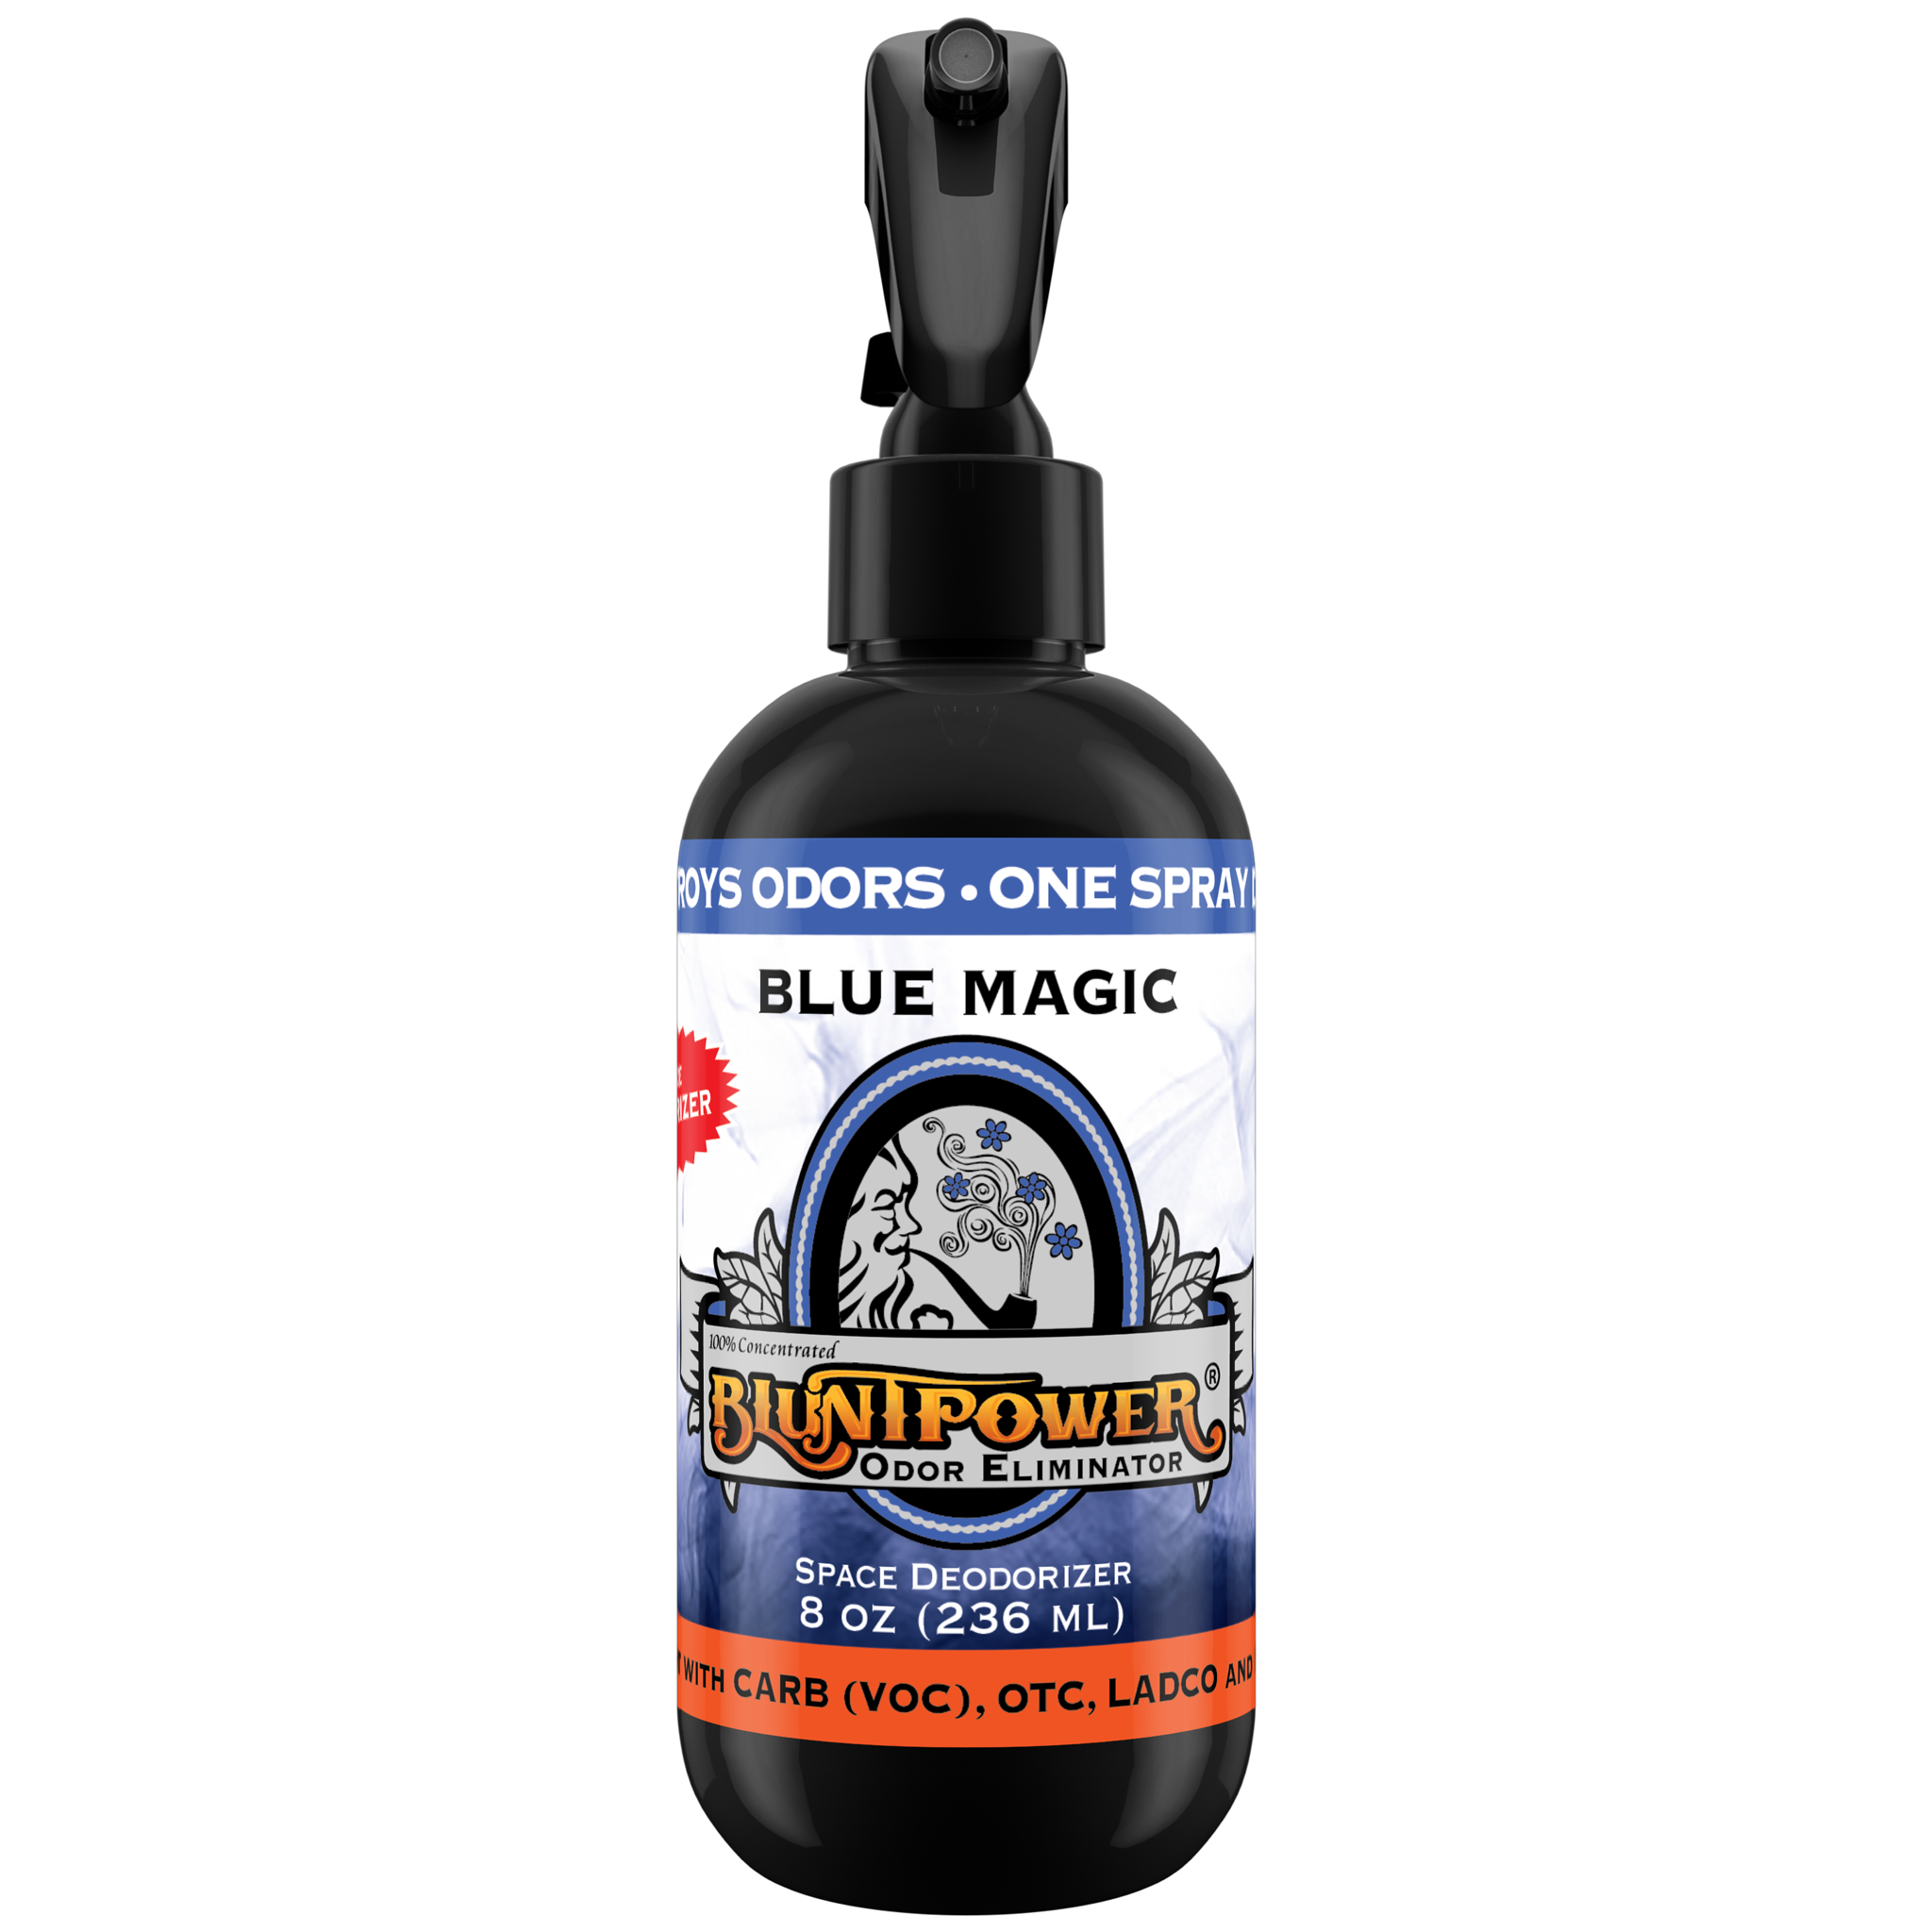 BluntPower Odor Eliminator - Blue Magic Scent